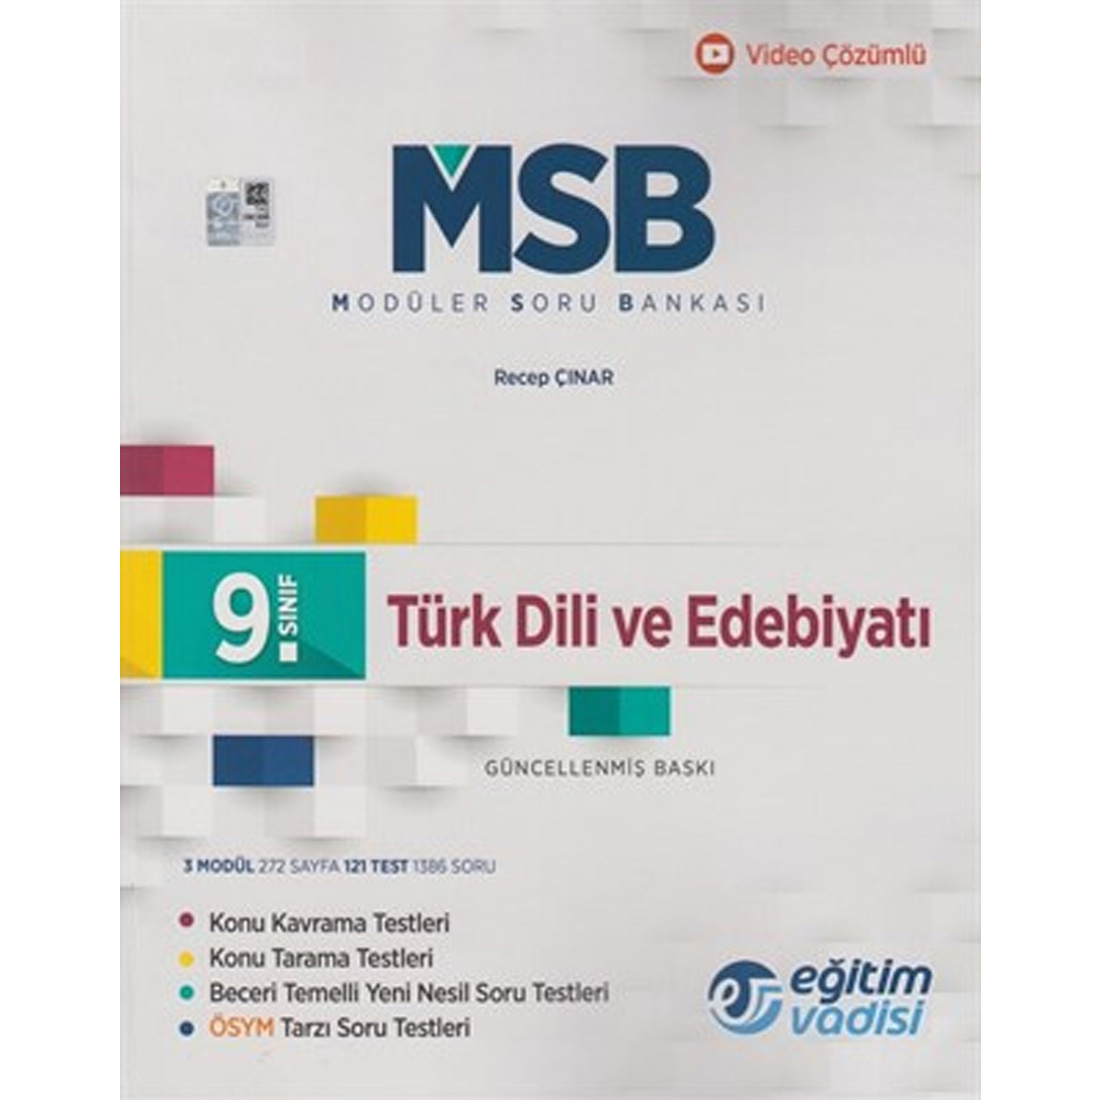 Eğitim Vadisi Yayınları 9. Sınıf Türk Dili ve Edebiyatı Modüler Soru Bankası Eğitim Vadisi